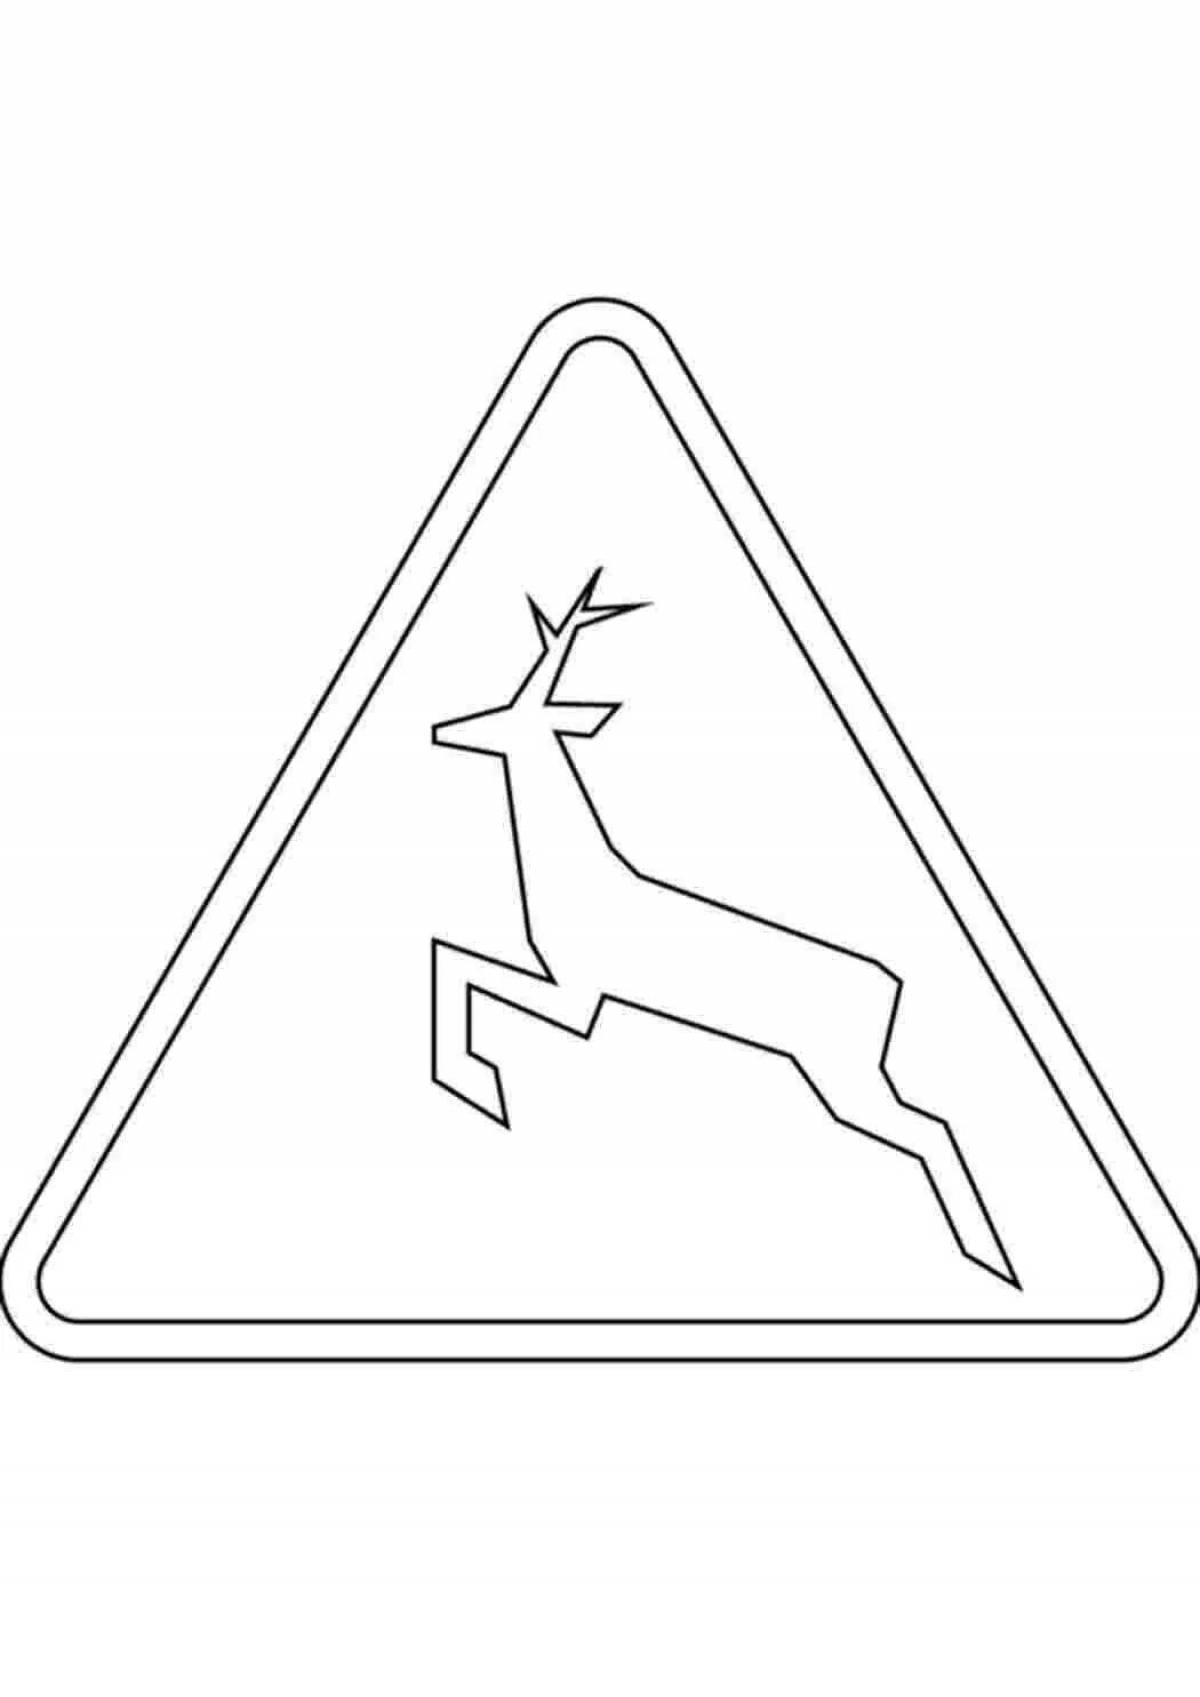 Уникальная раскраска знак правил дорожного движения диких животных